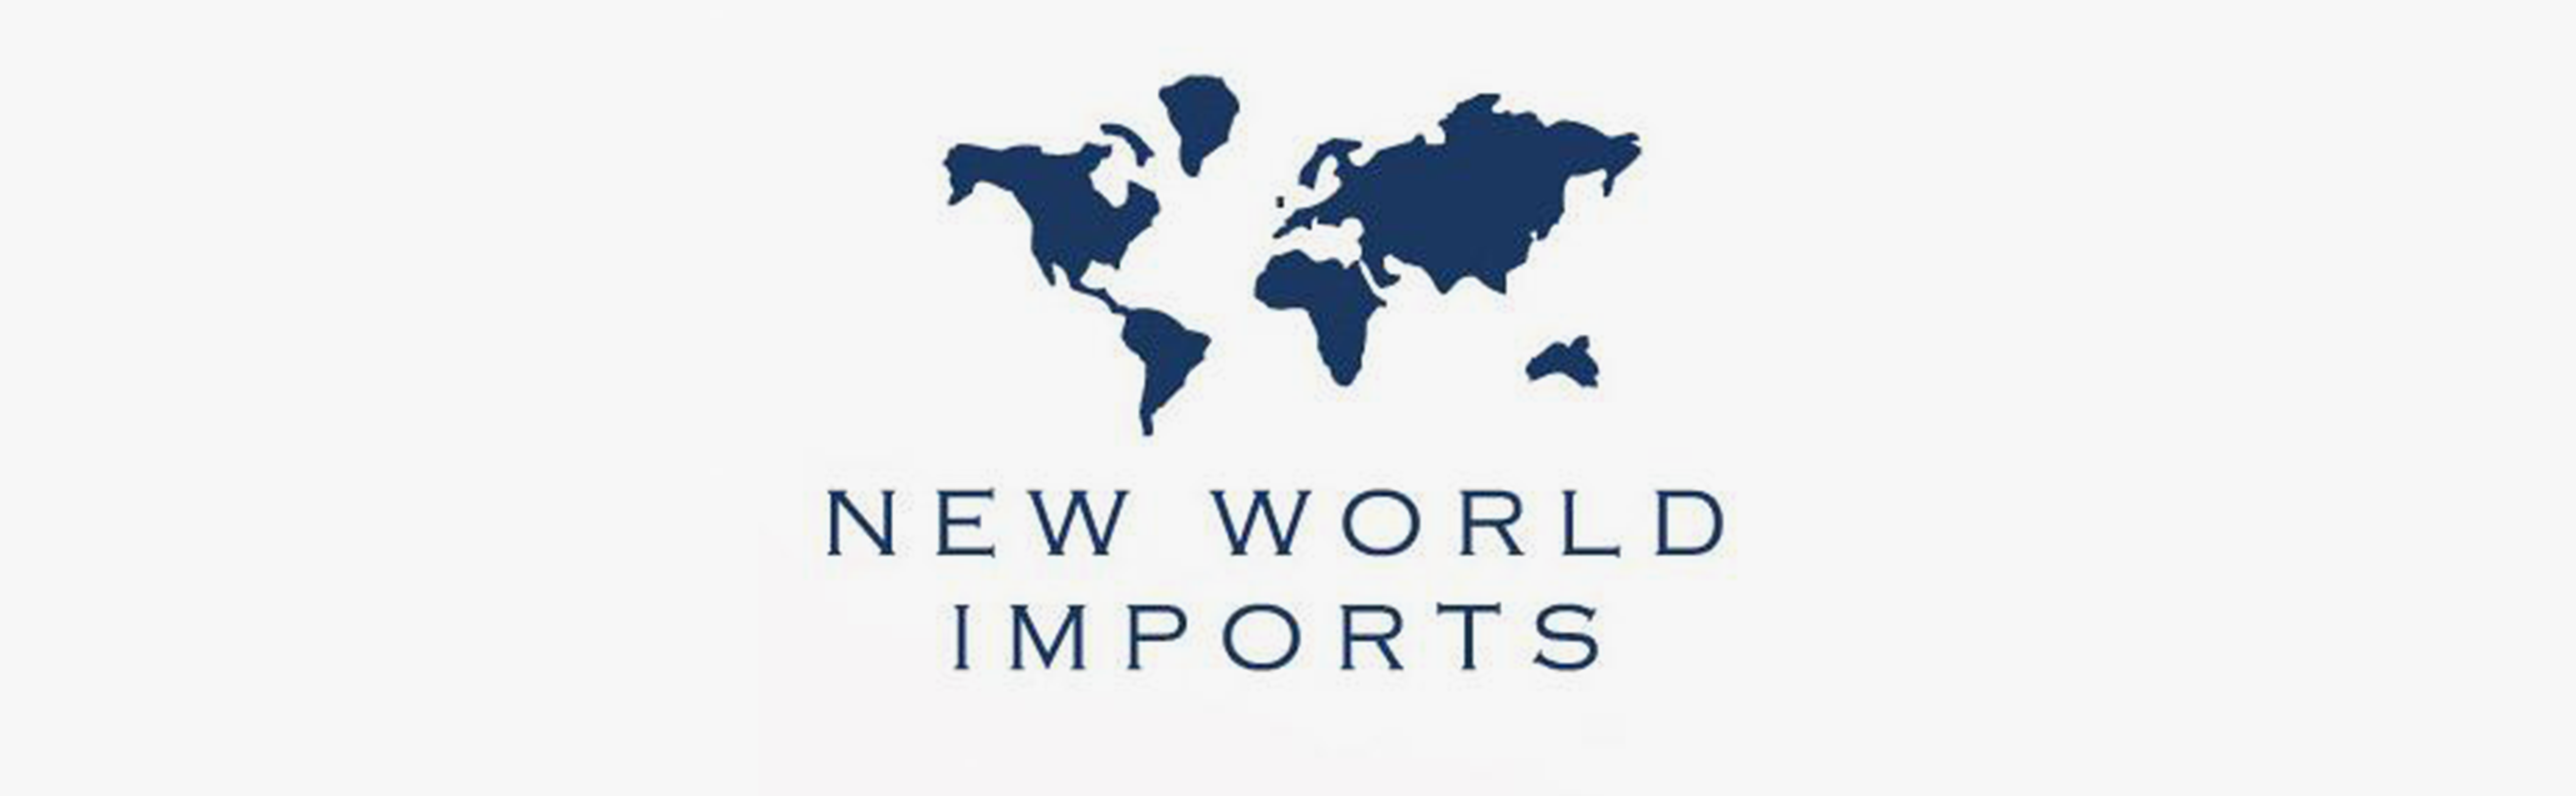 New World Imports